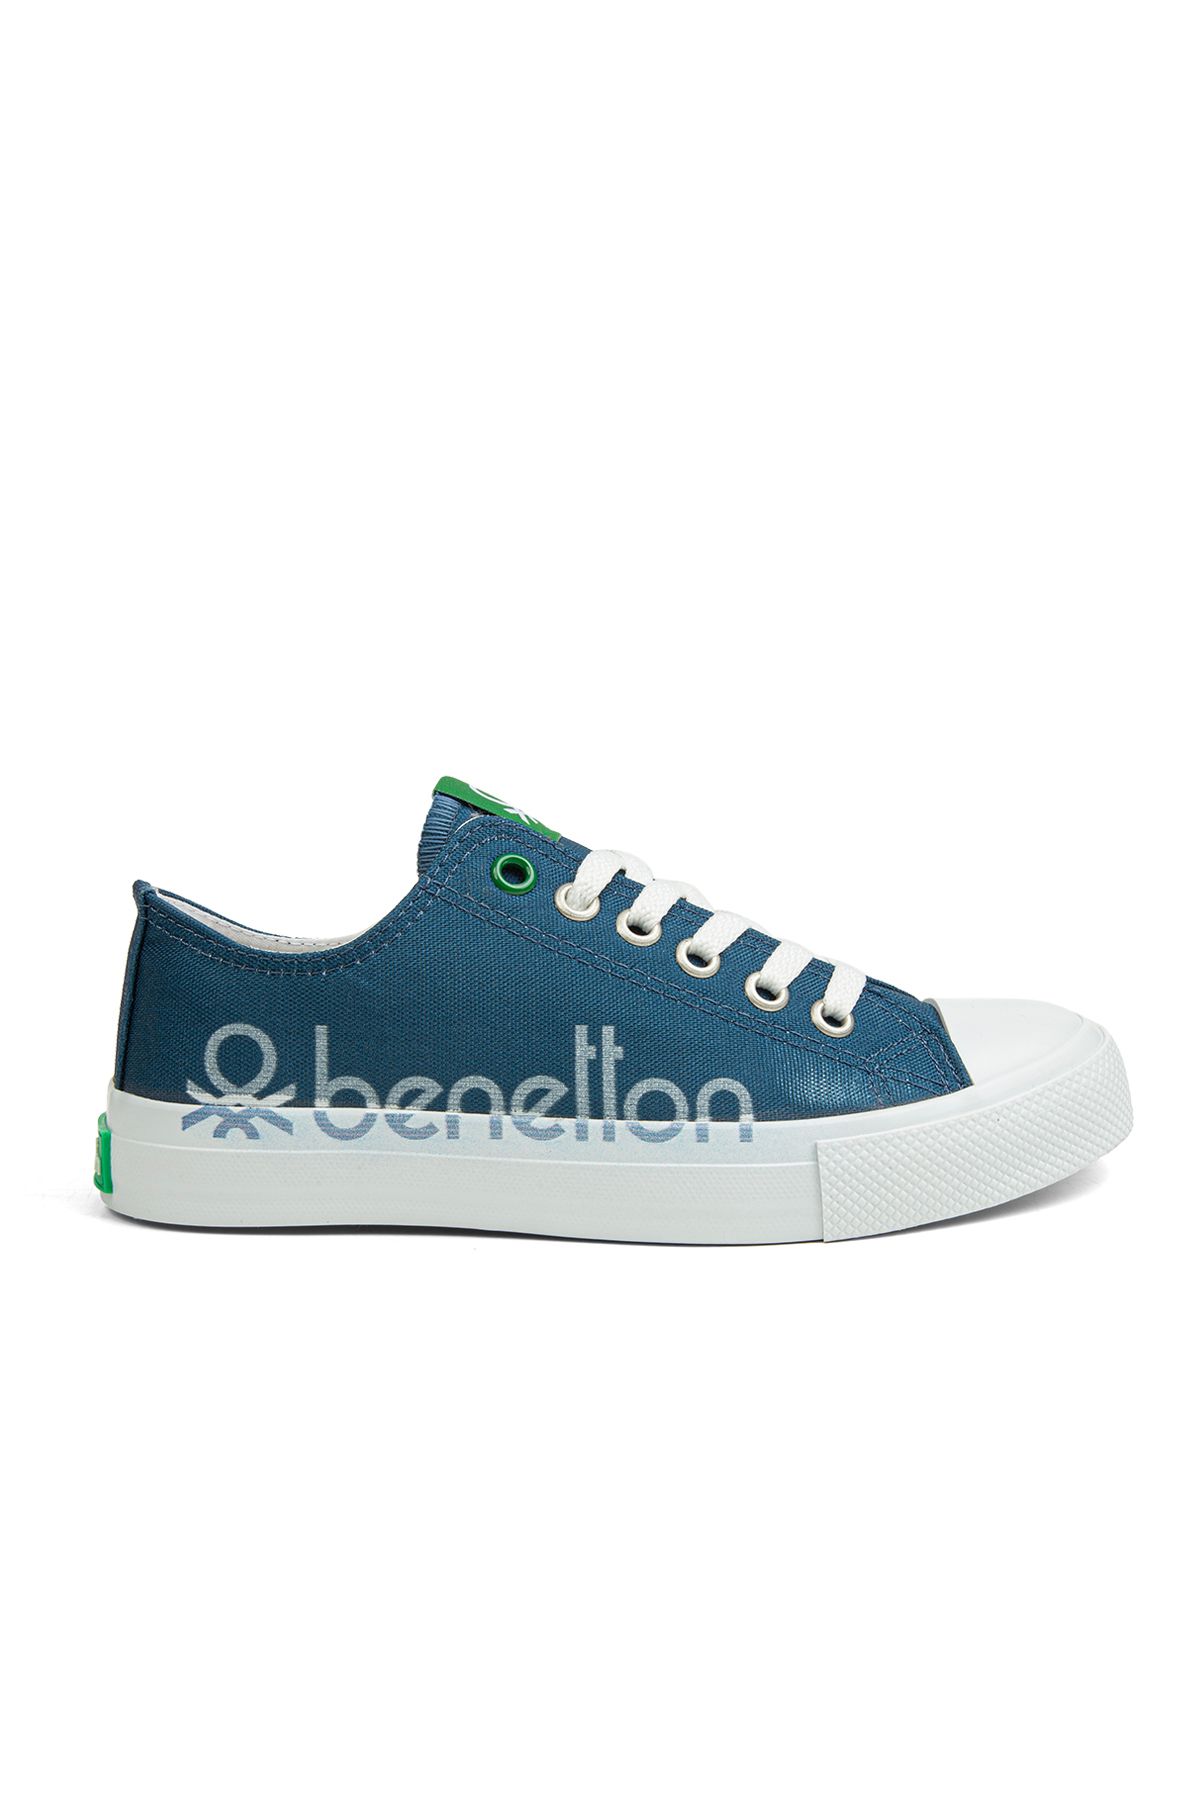 Benetton ® | Bn-30566 - 3374 Kot Mavi - Kadın Spor Ayakkabı